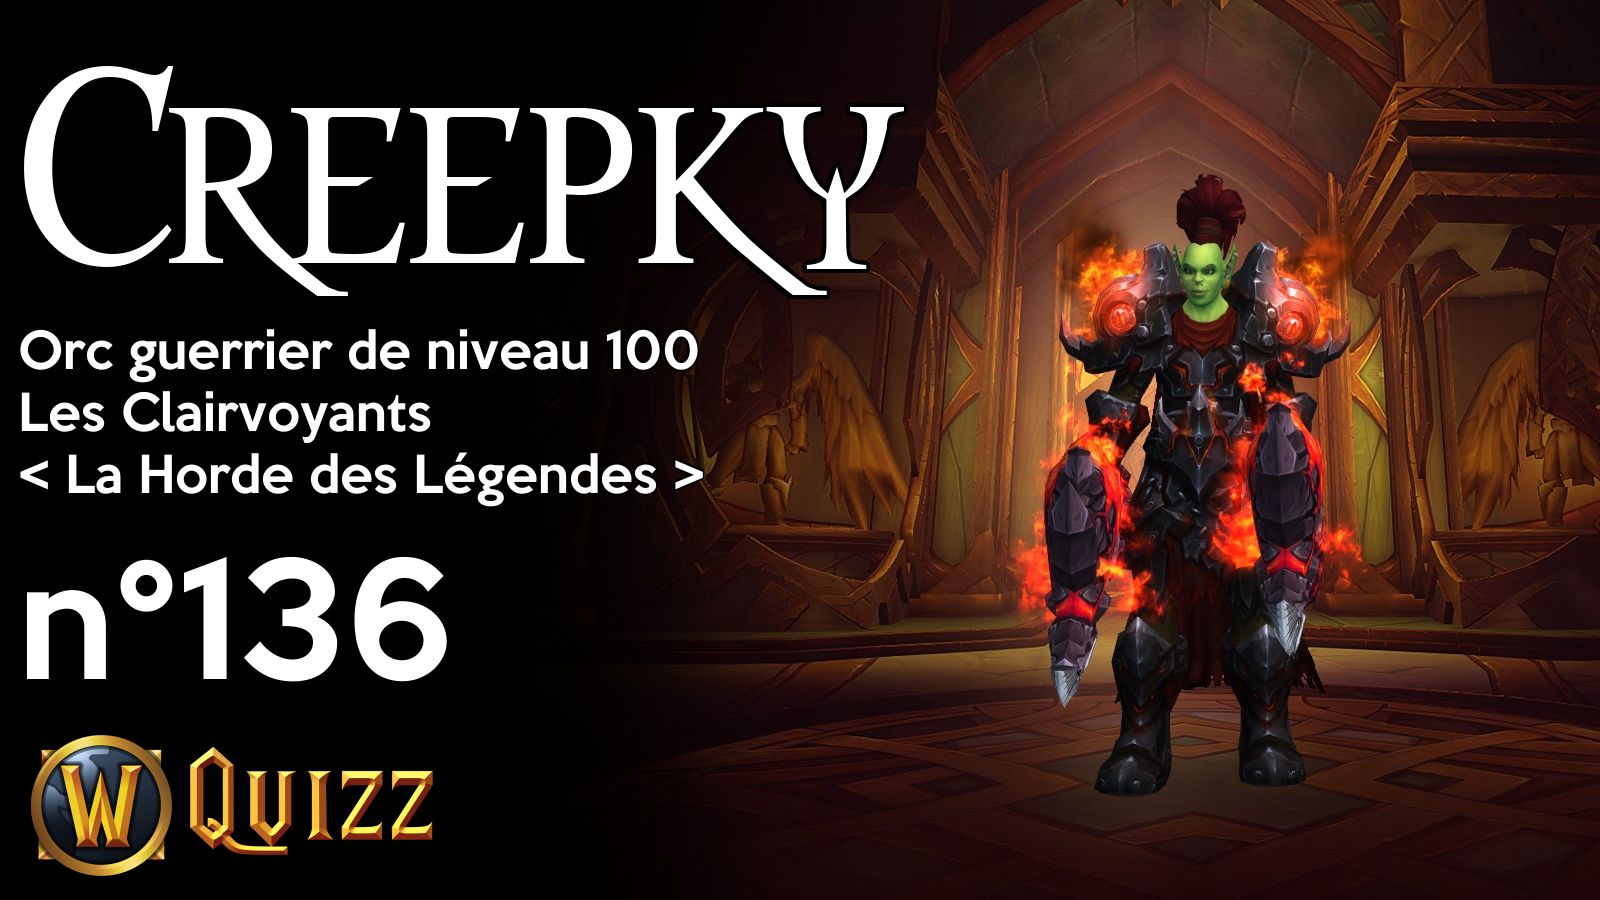 Creepky, Orc guerrier de niveau 100, Les Clairvoyants